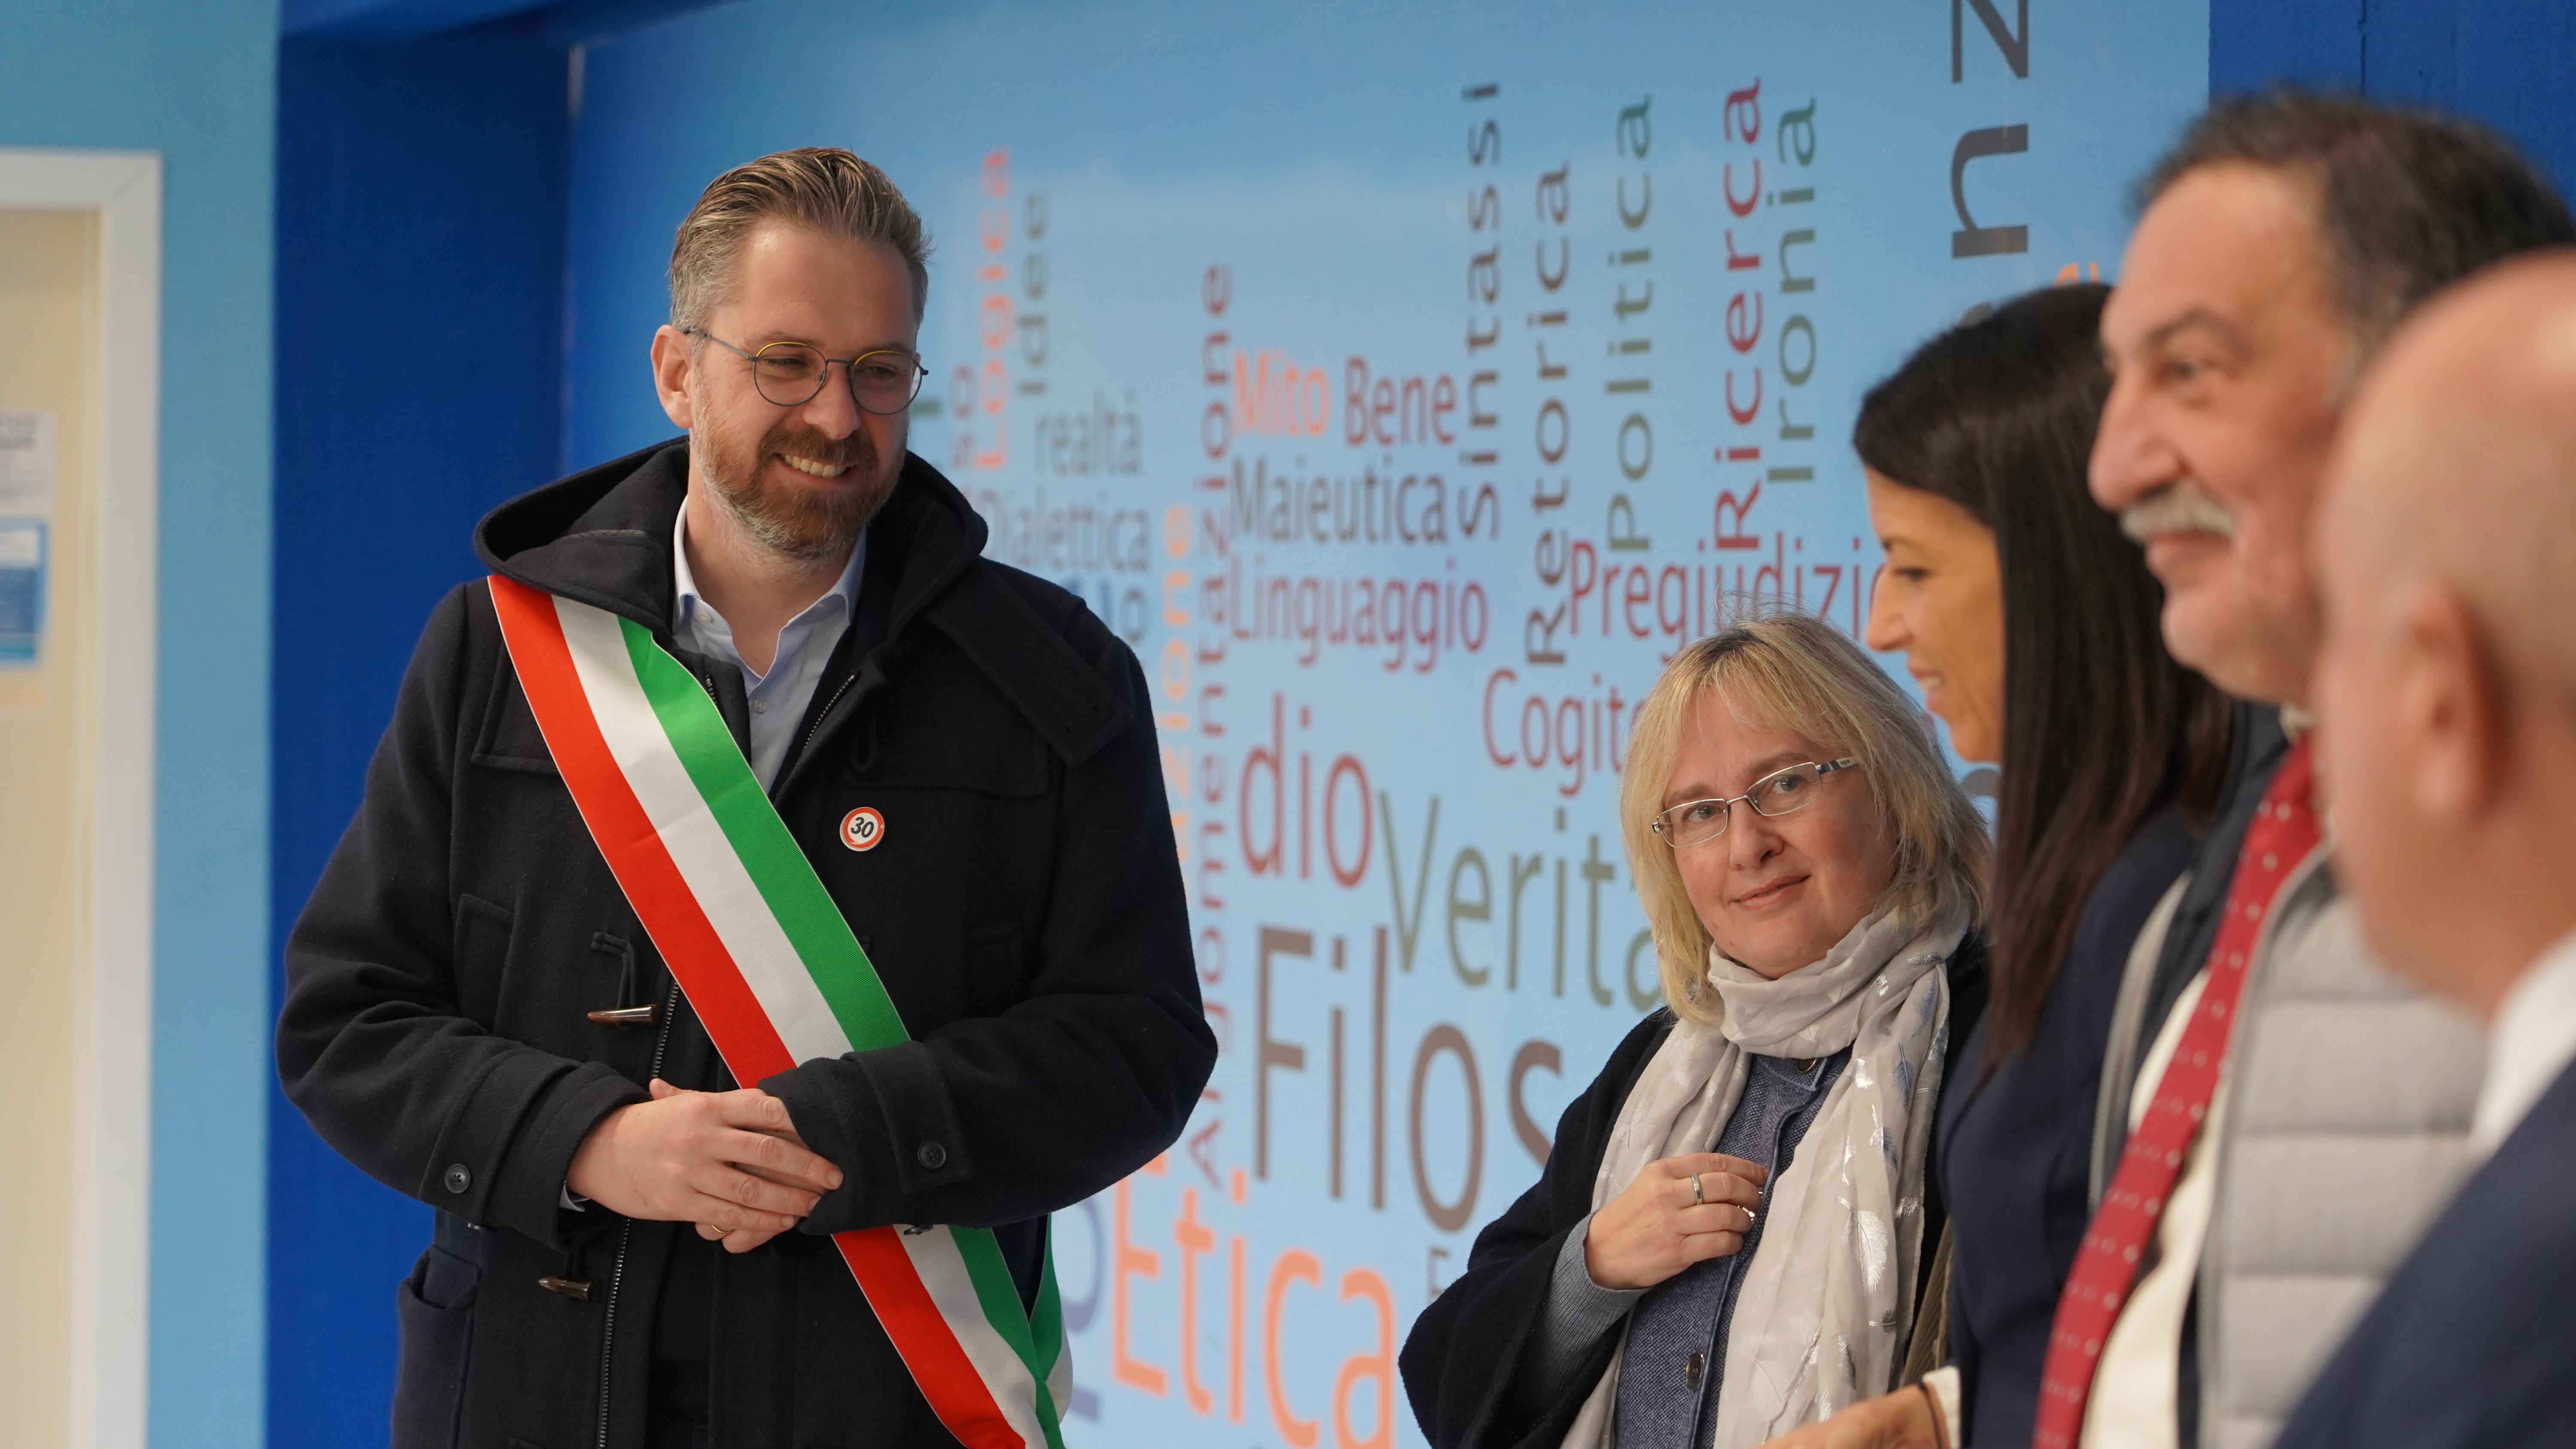 Istituto Belluzzi Fioravanti, il sindaco Matteo Lepore inaugura la nuova biblioteca